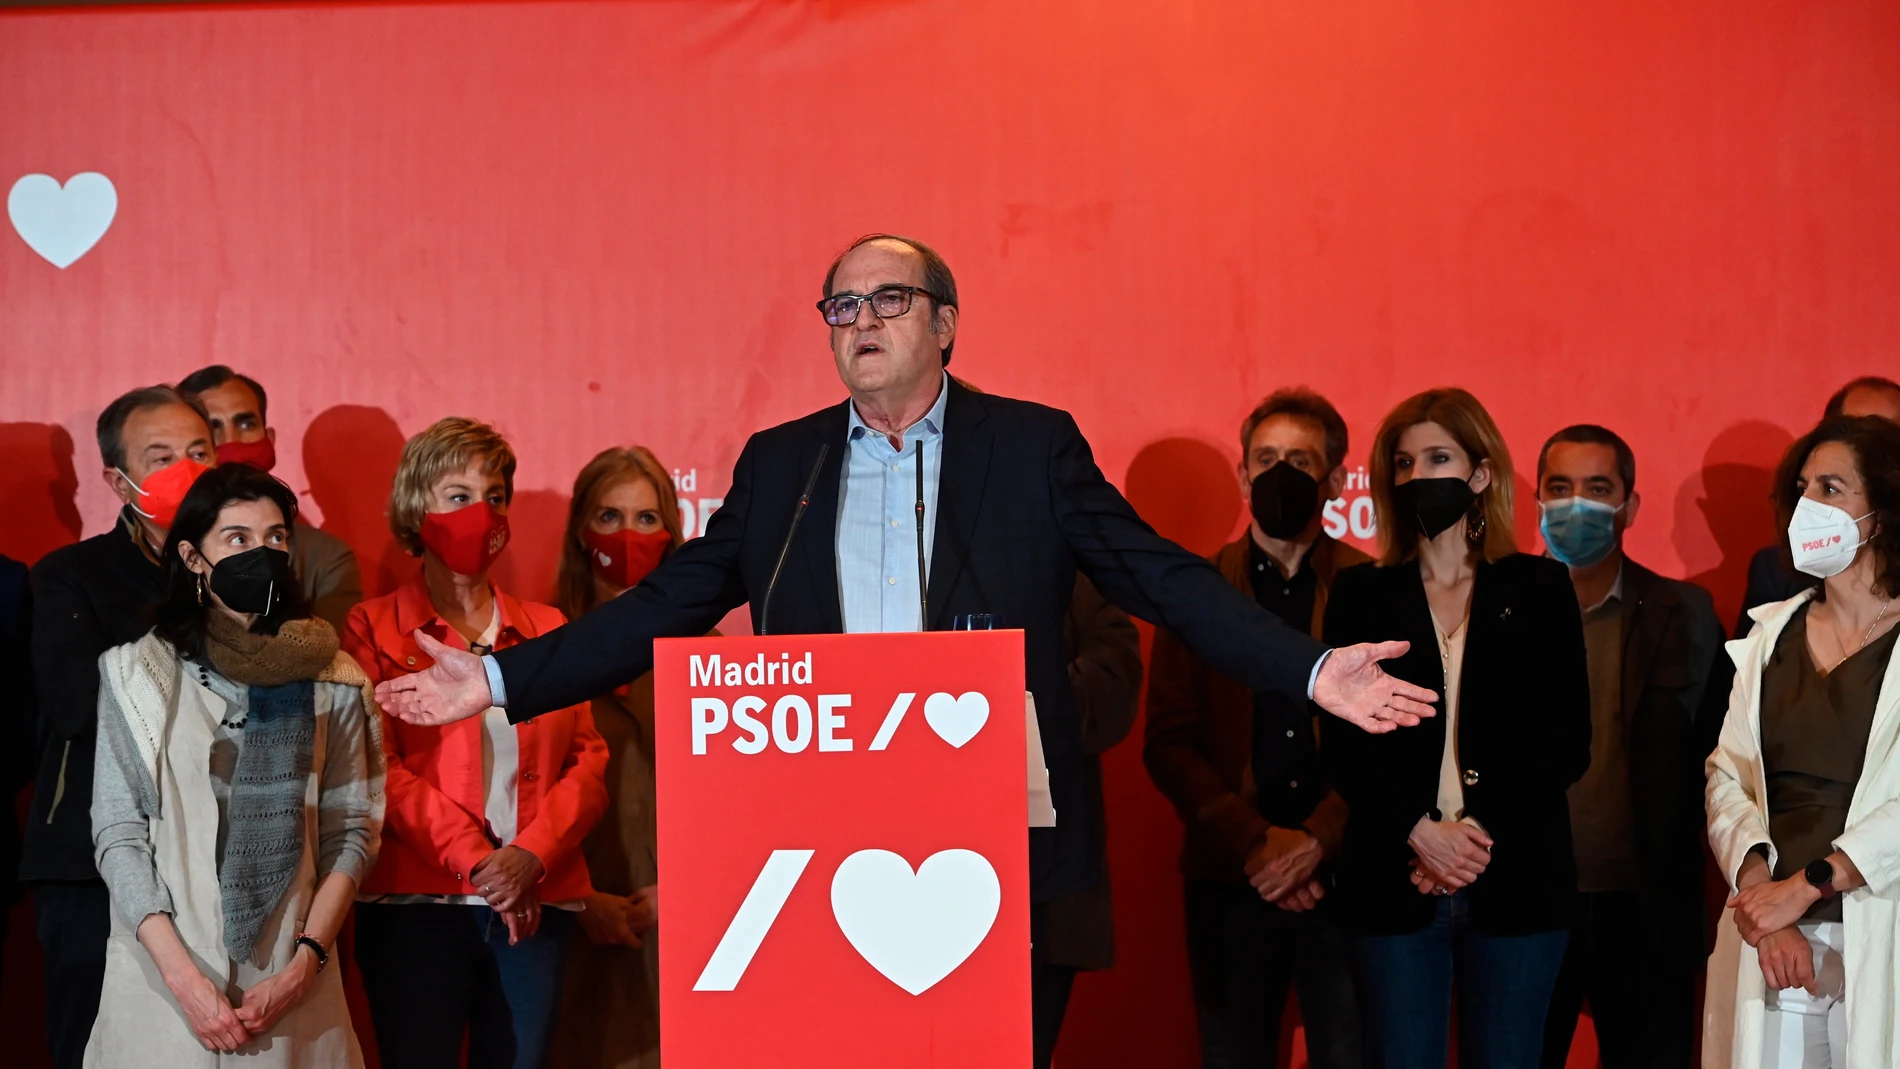 El PSOE pierde el liderazgo de la izquierda y sufre su peor resultado electoral en Madrid